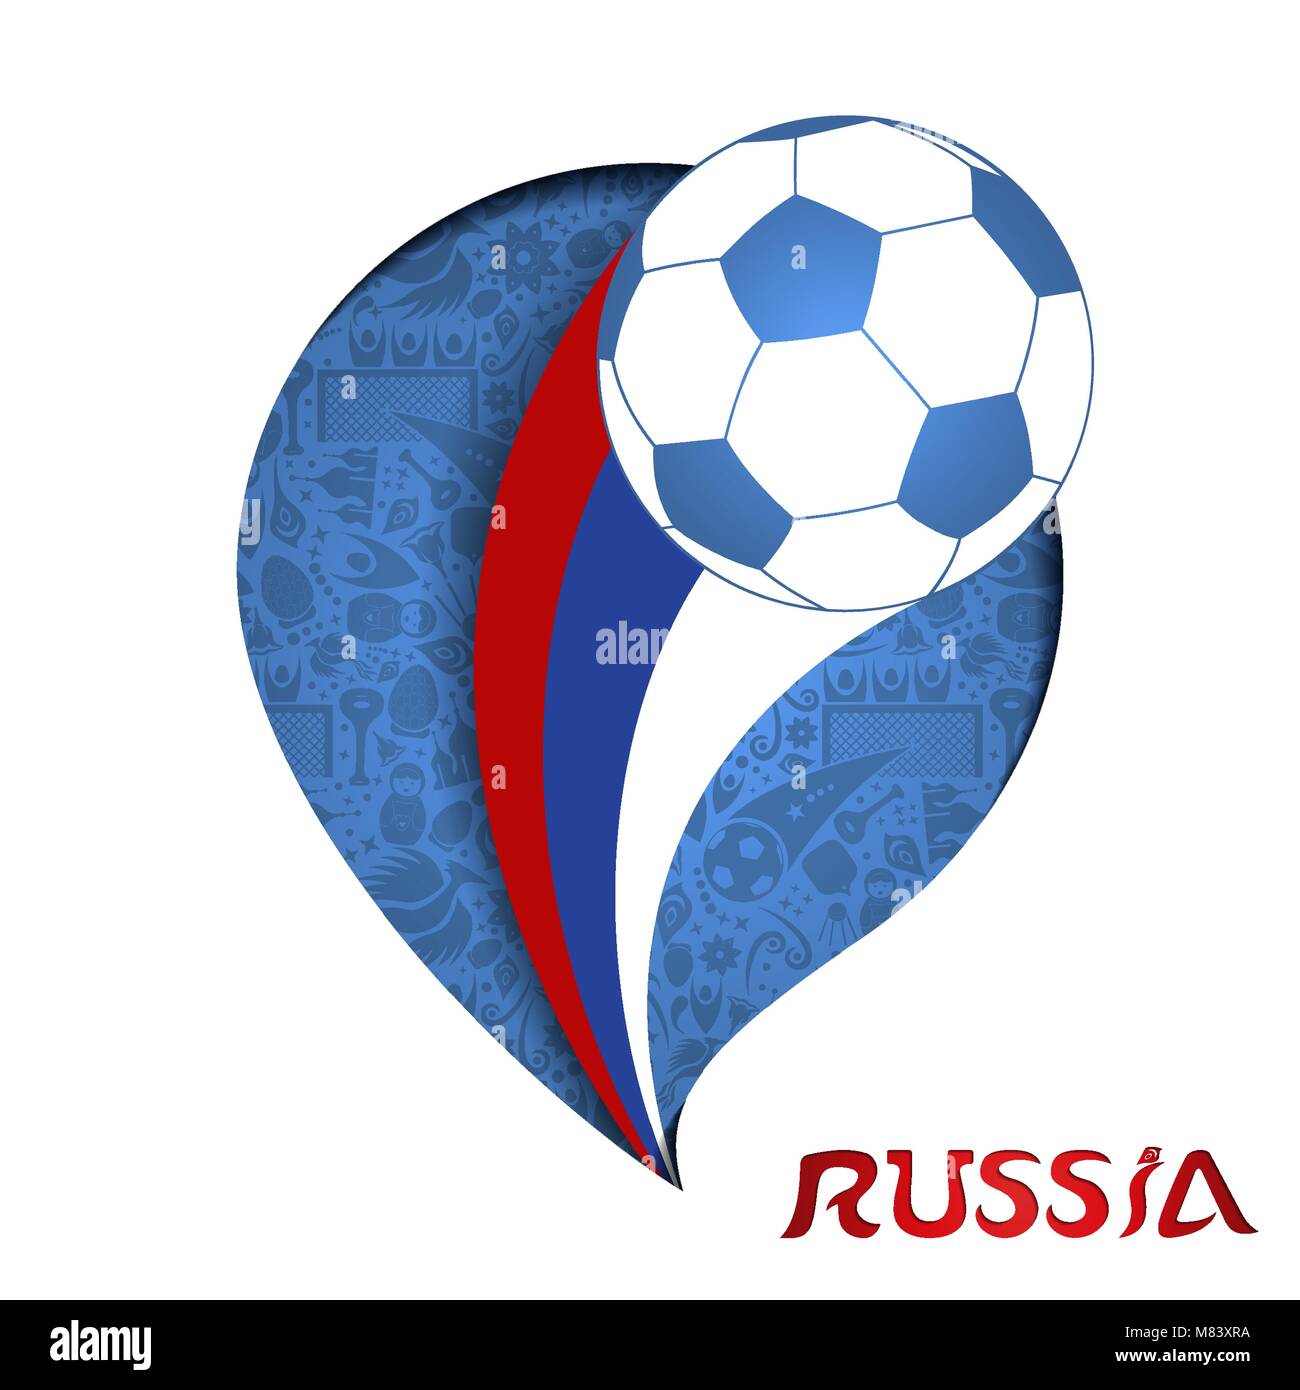 Russland Abbildung, Papier schneiden Stil Design. Fußball-Hintergrund mit Spiel Ball im russischen Land Flagge Farben. EPS 10 Vektor. Stock Vektor